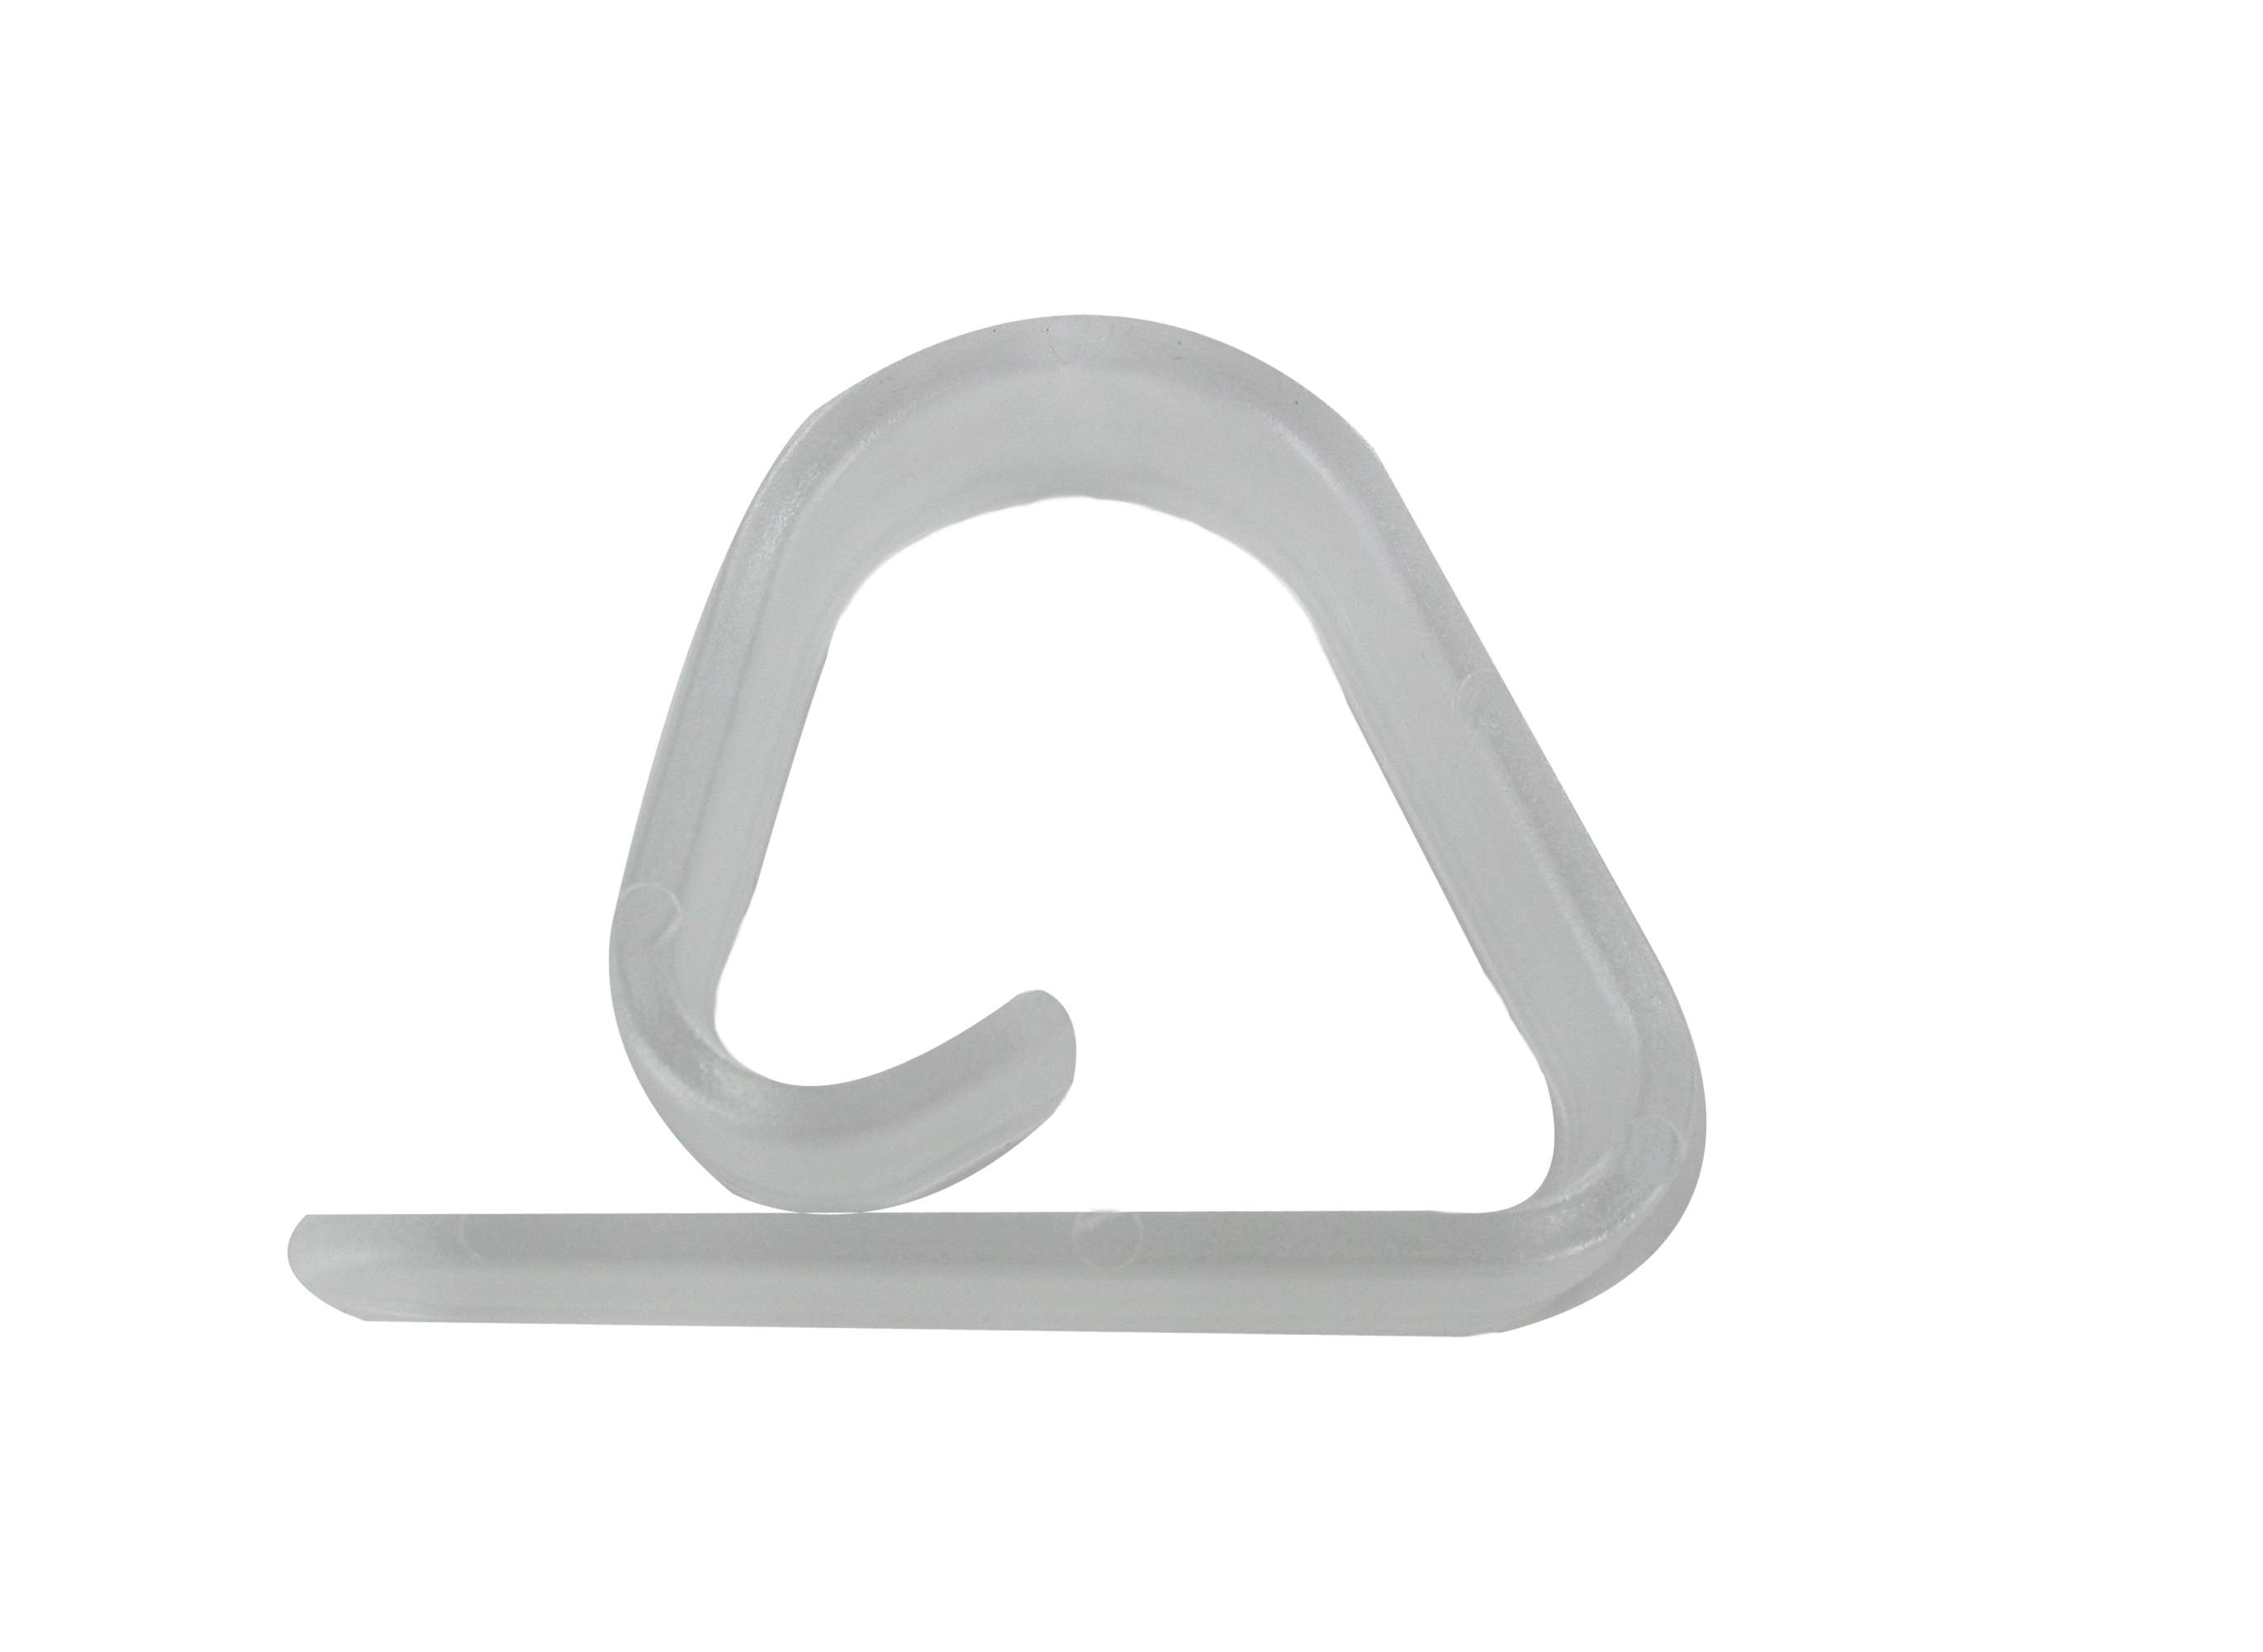 Tablecloth clip hook, H.53, I.16, D.39mm, clear PVC, 2 pcs.